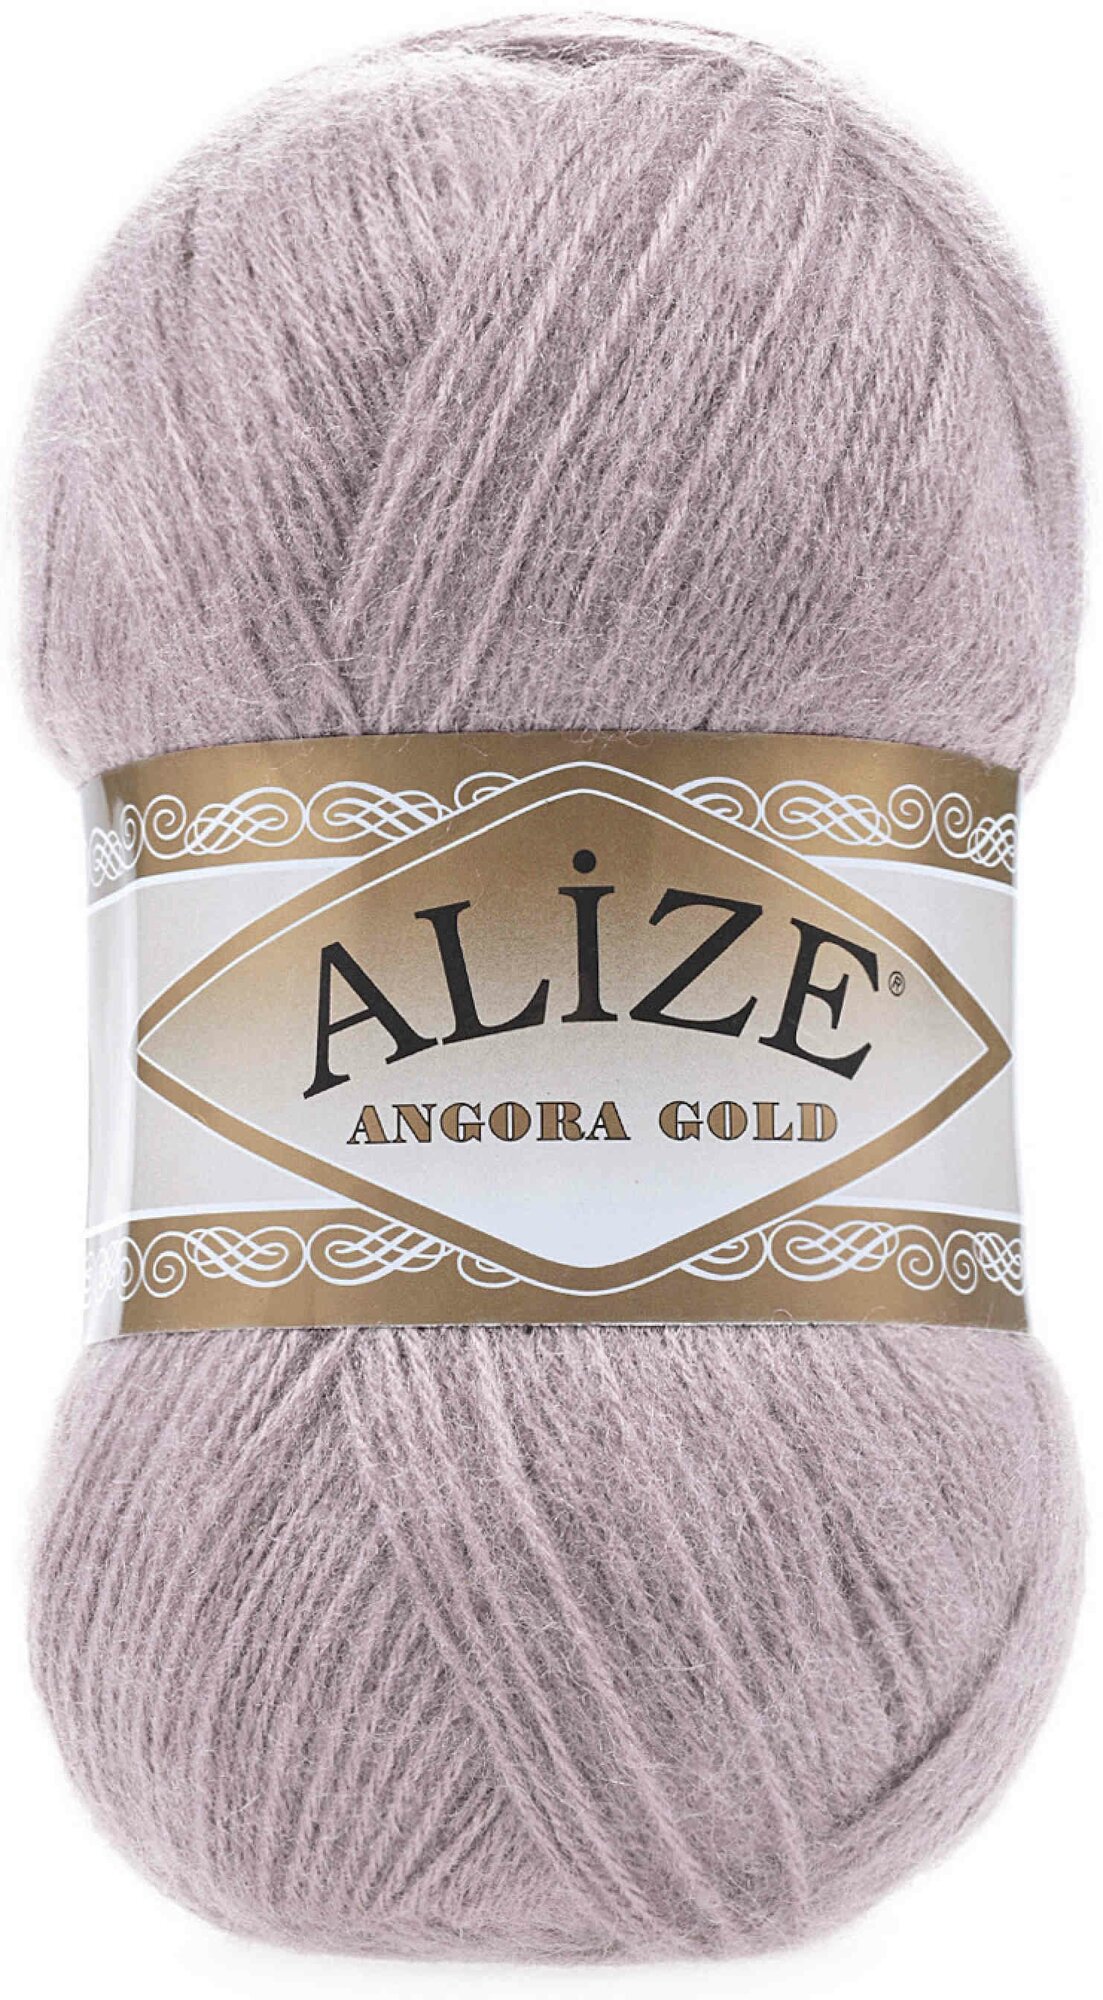 Пряжа Alize Angora Gold серая роза (163), 80%акрил/20%шерсть, 550м, 100г, 2шт